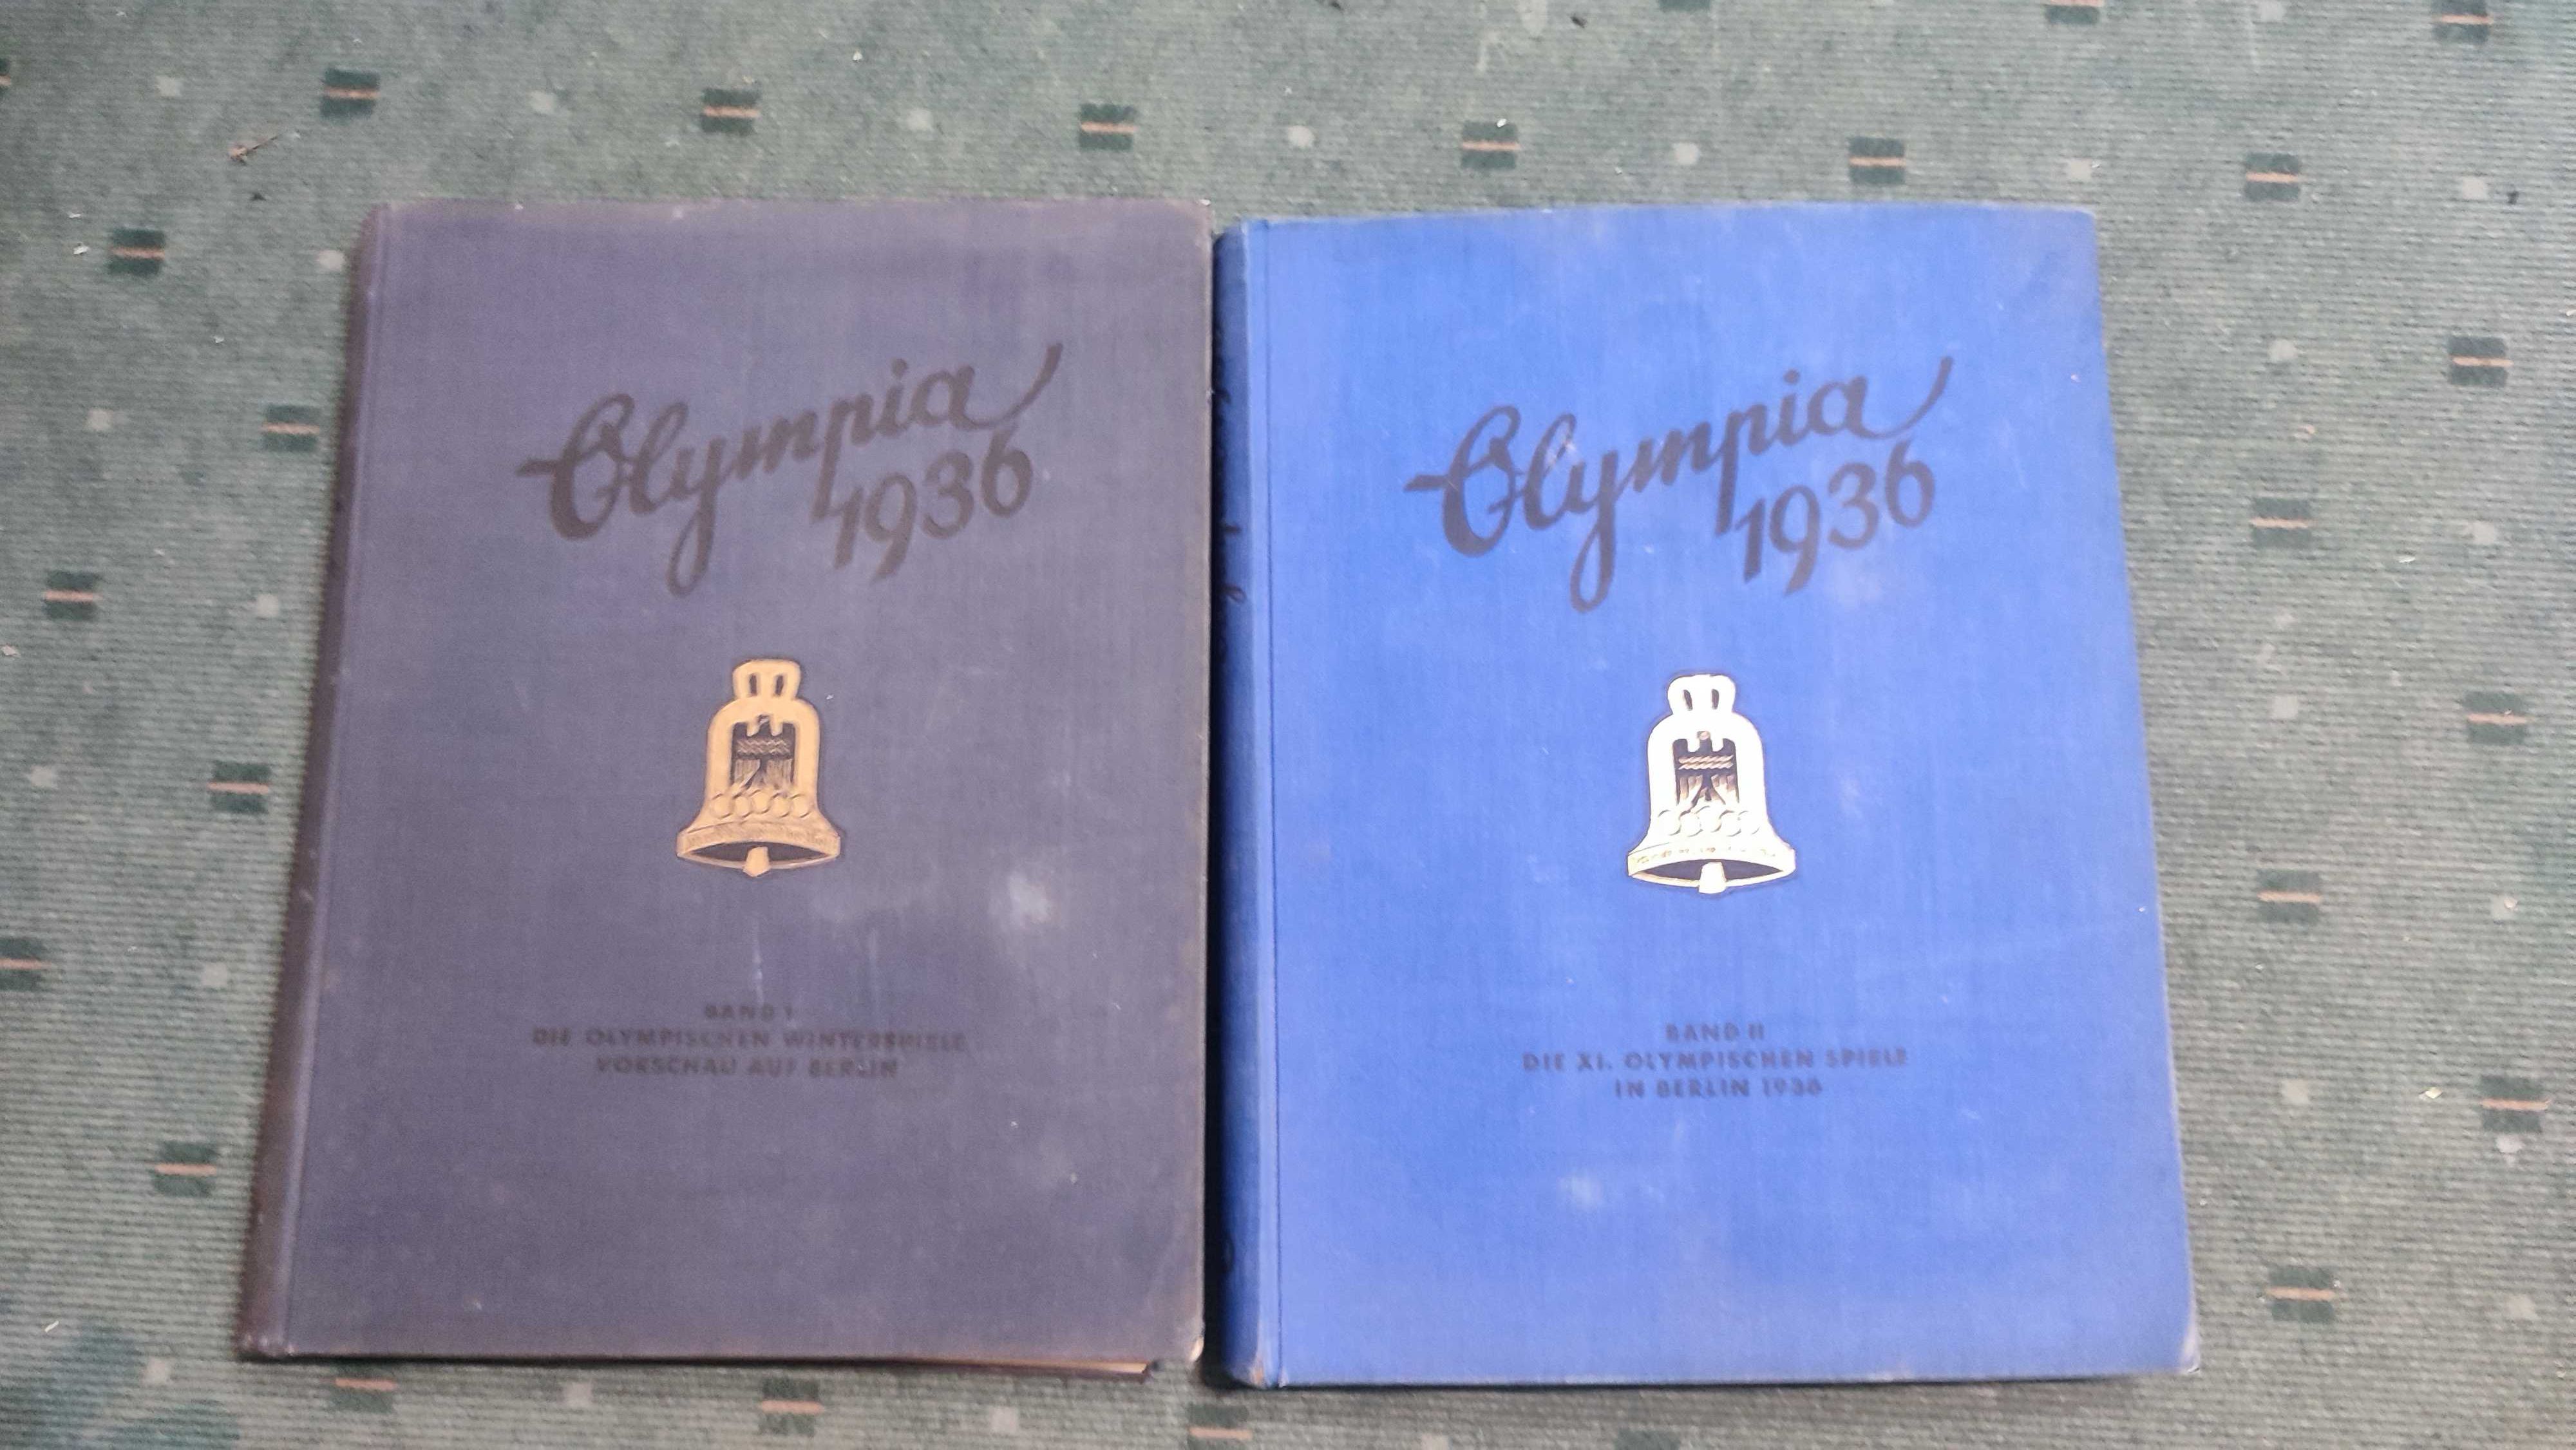 Die Olympischen Spiele 1936 -  2 volumes